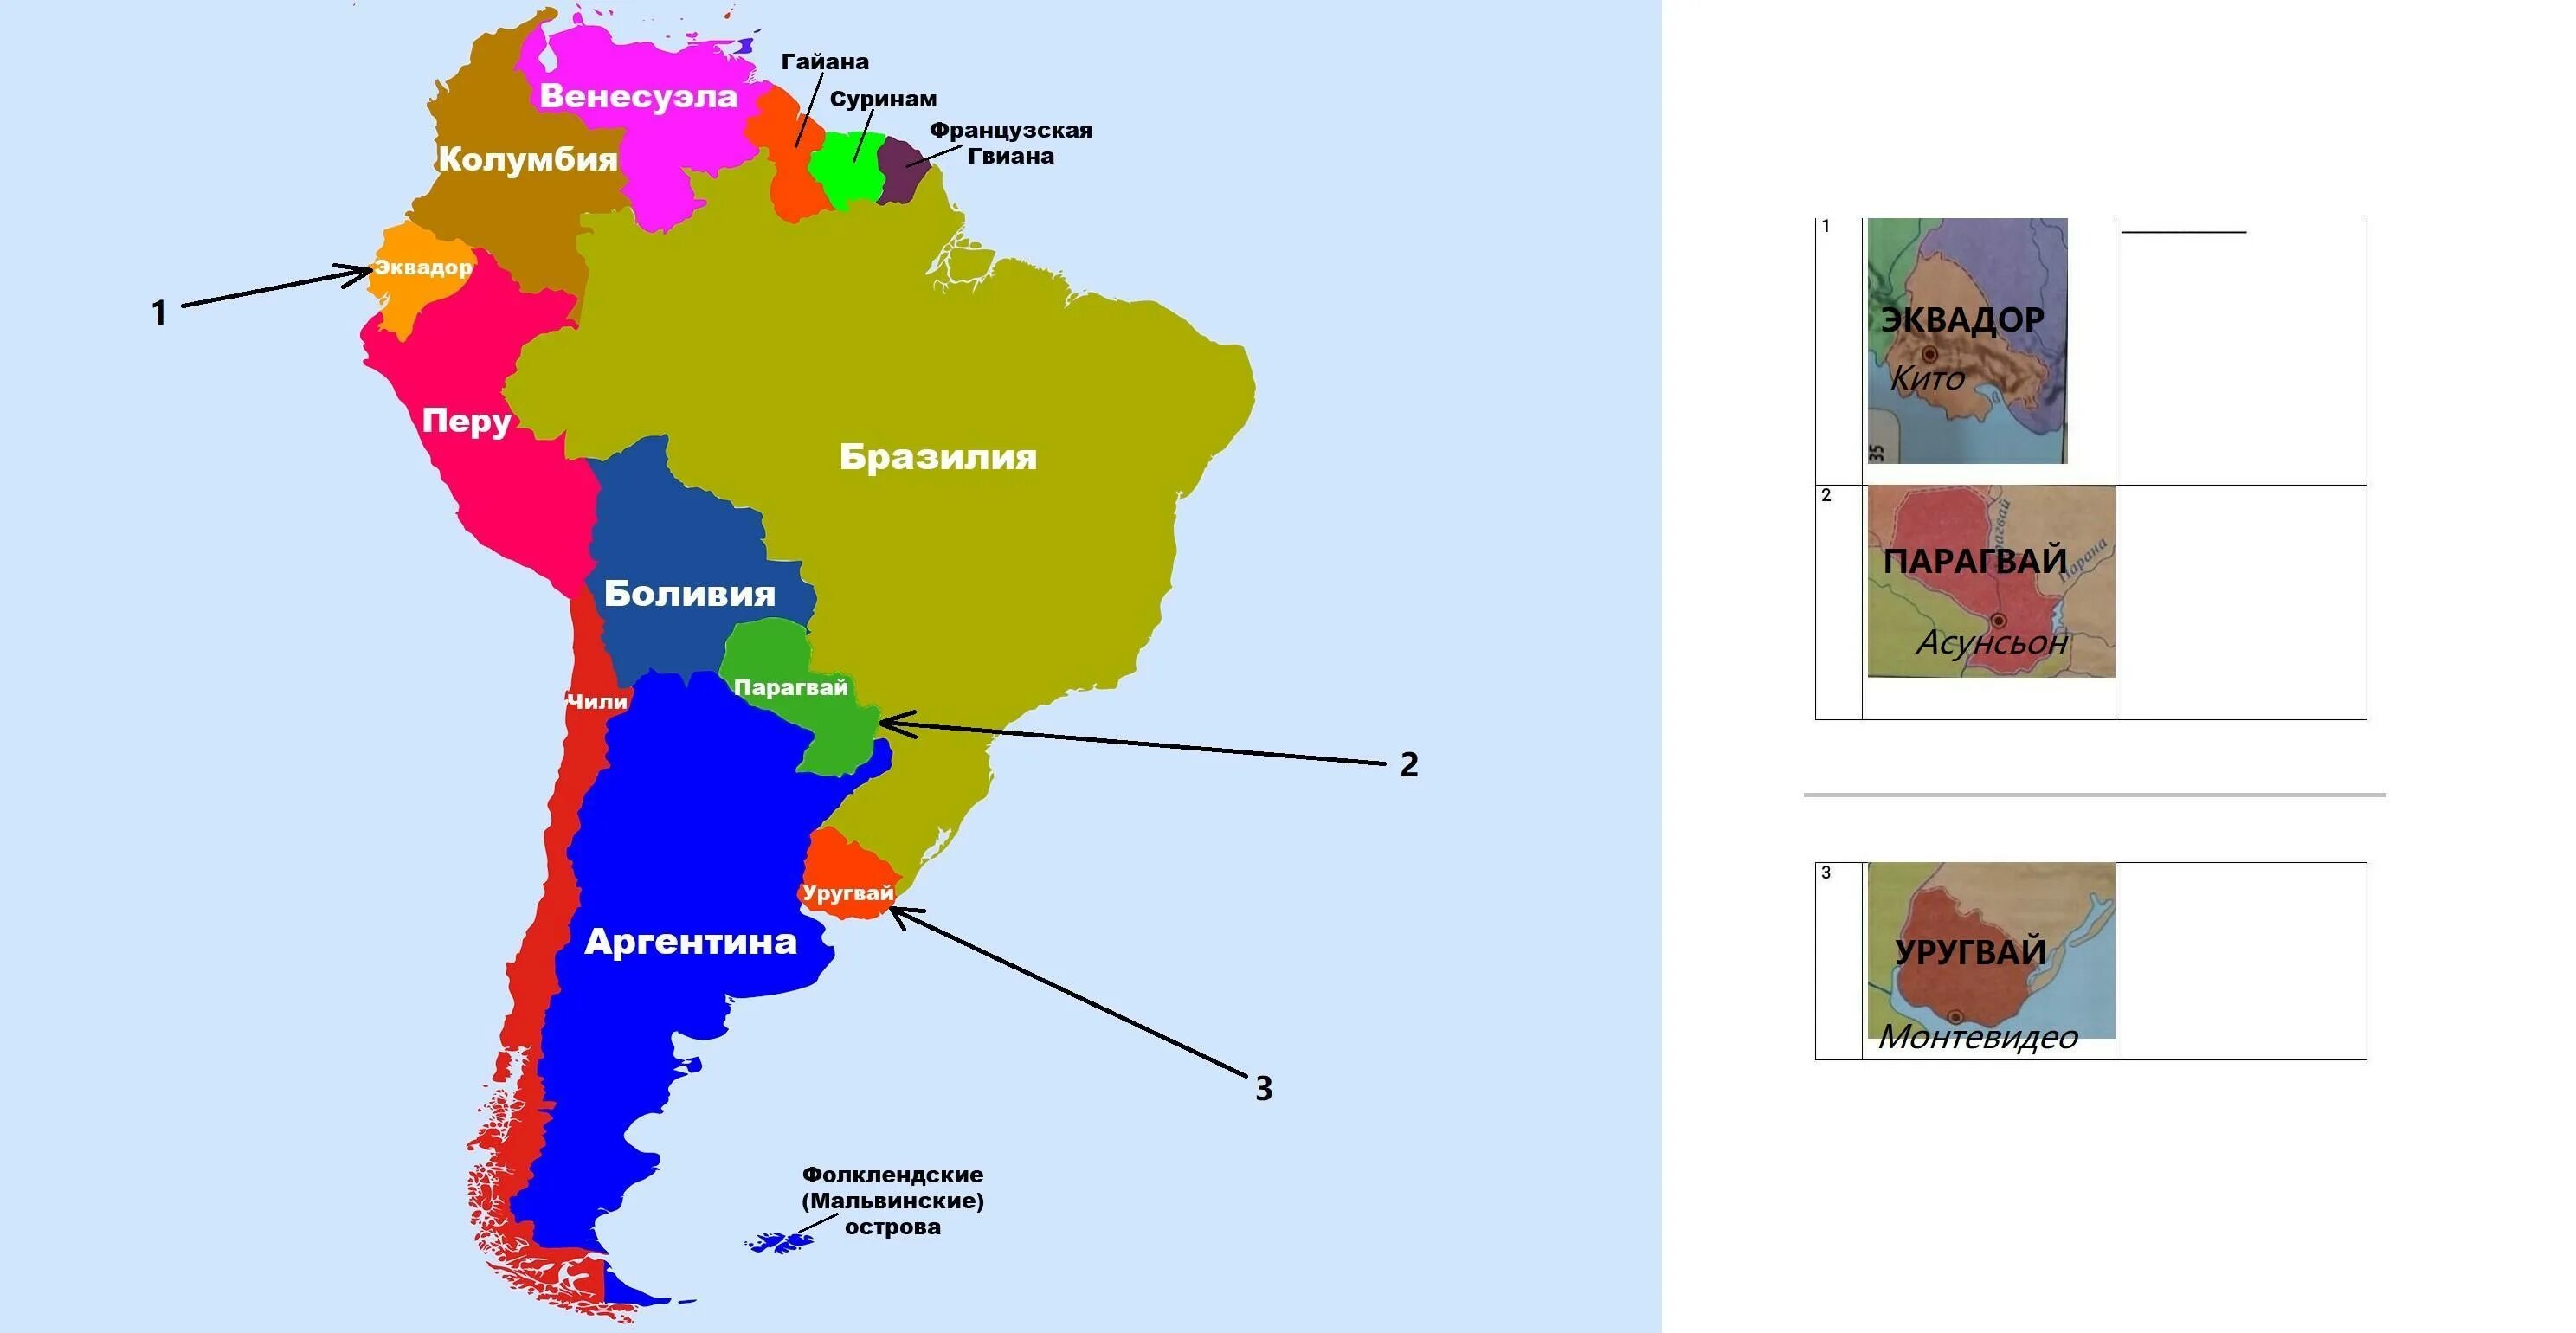 Южная америка по величине. Политическая карта Южной Америки Америки. Государства Южной Америки на карте. Политичская крата Южной Америки. Южная Америк ана 4карте.